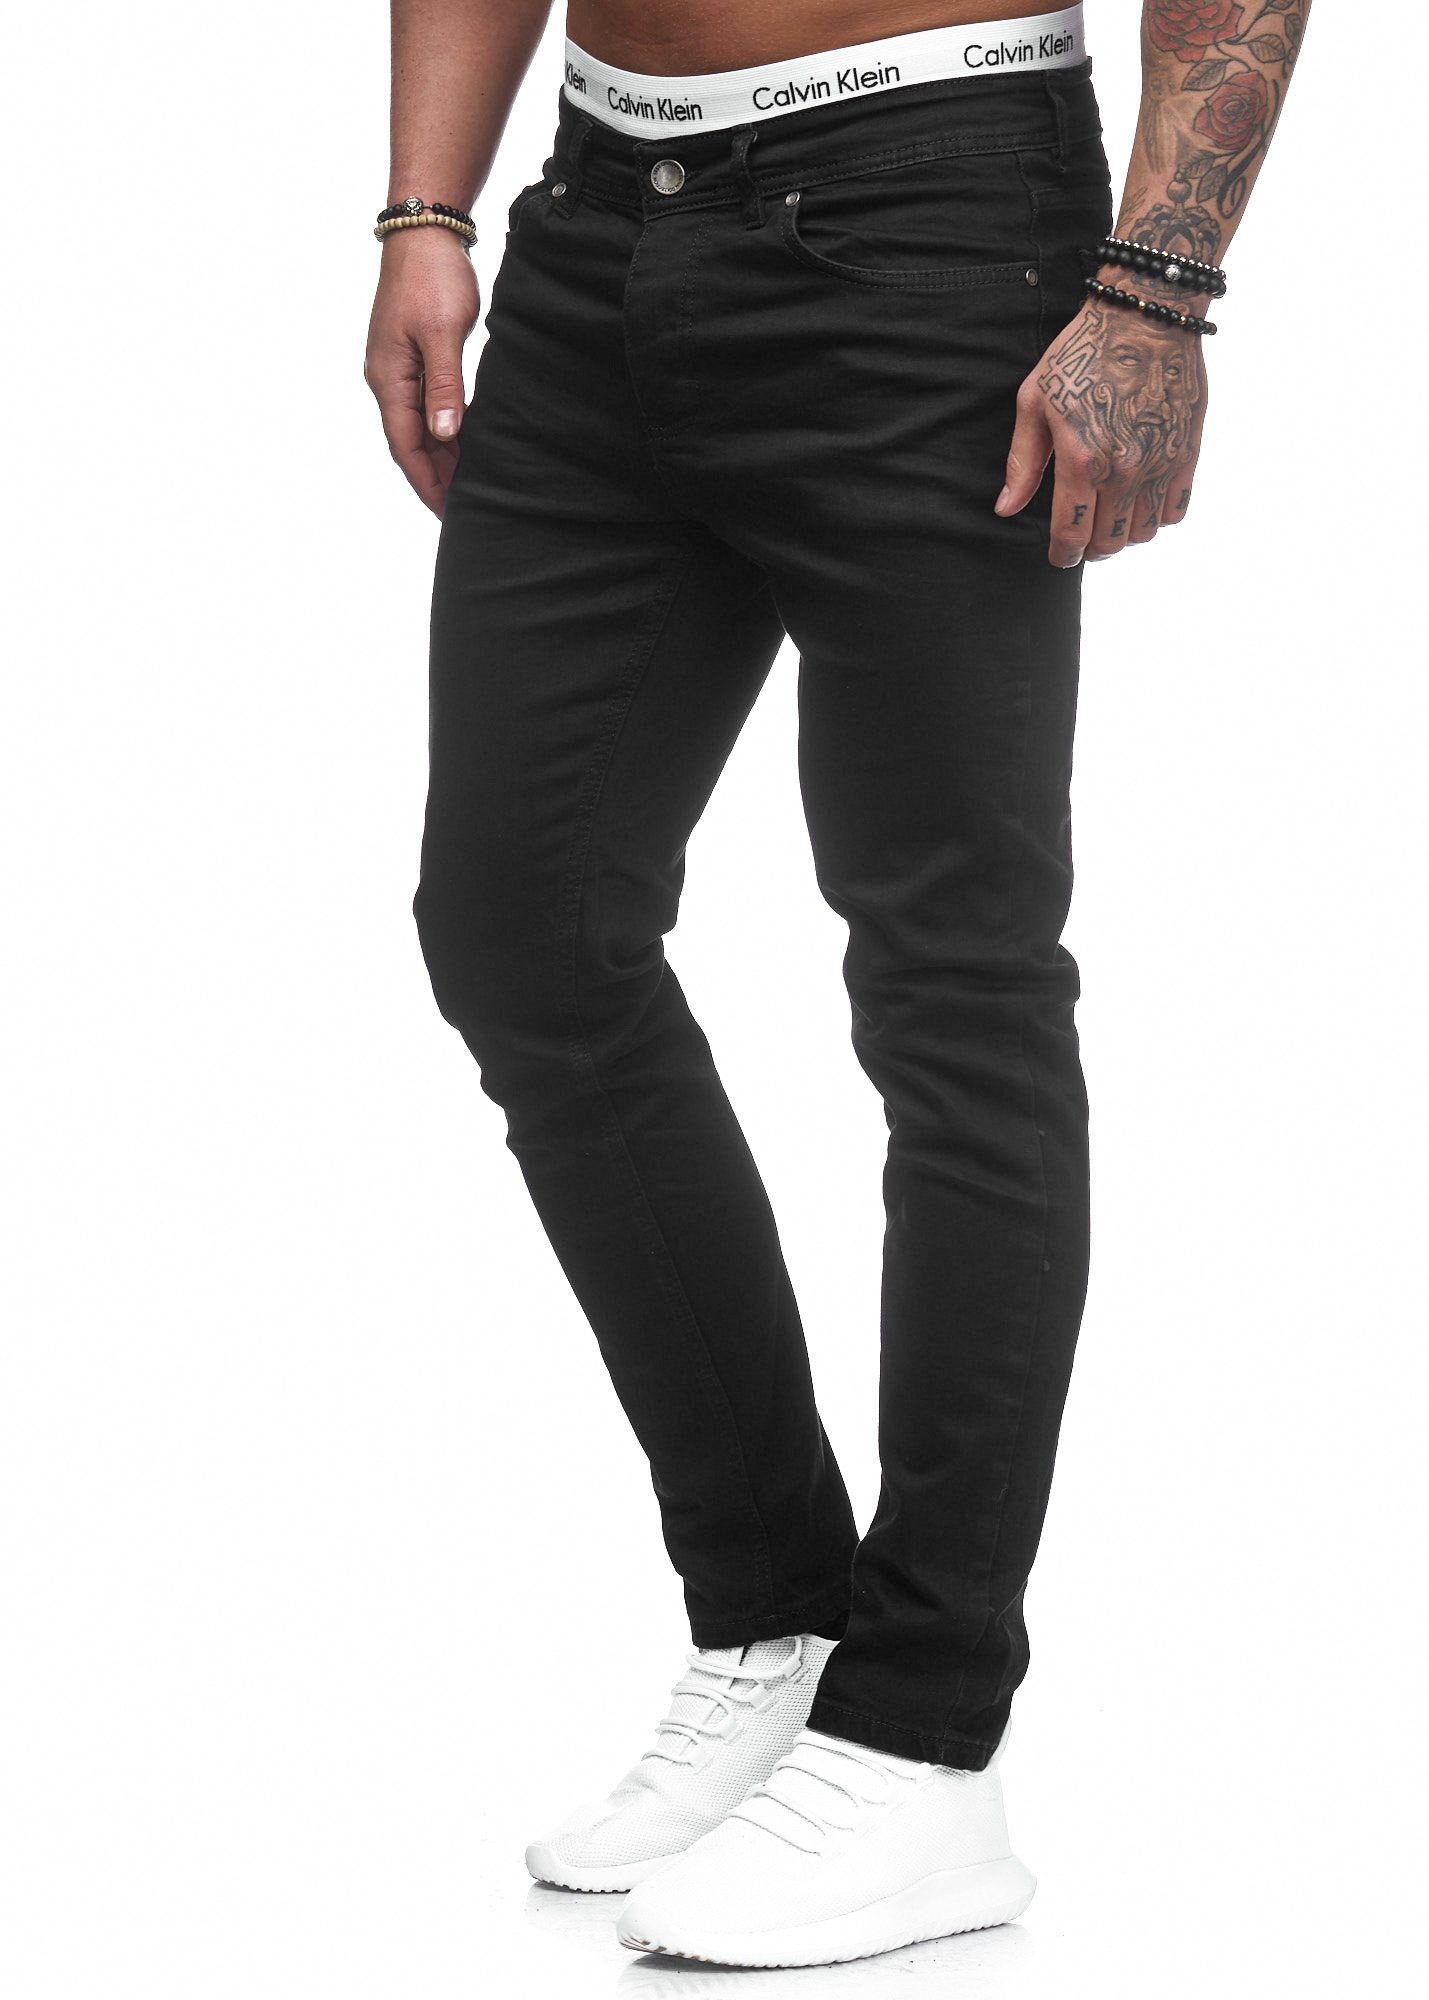 Code47 Fit 5078 Hose Herren Schwarz Jeans Slim-fit-Jeans Slim Chino Jeanshose Designer Stretch Basic